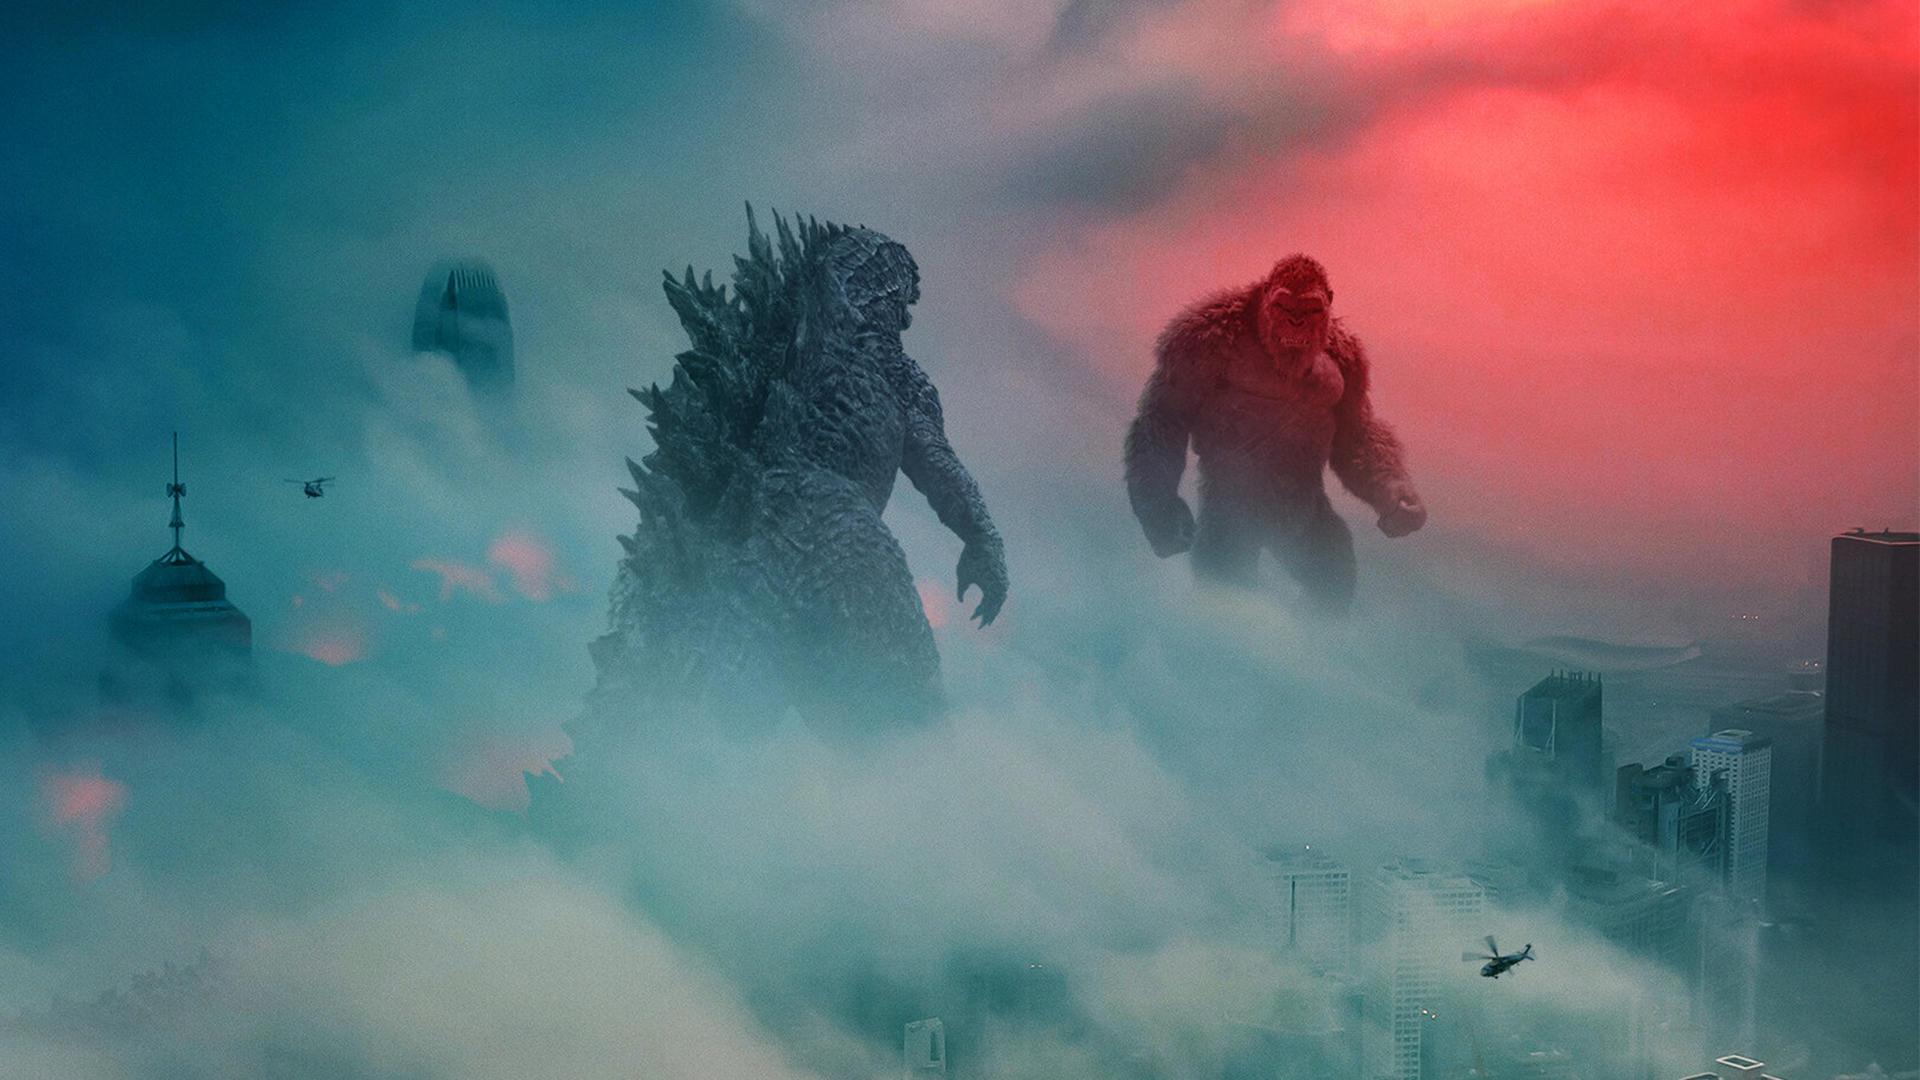 گودزیلا در برابر کینک کونگ در میان شهری سقوط کرده در فیلم Godzilla vs. Kong